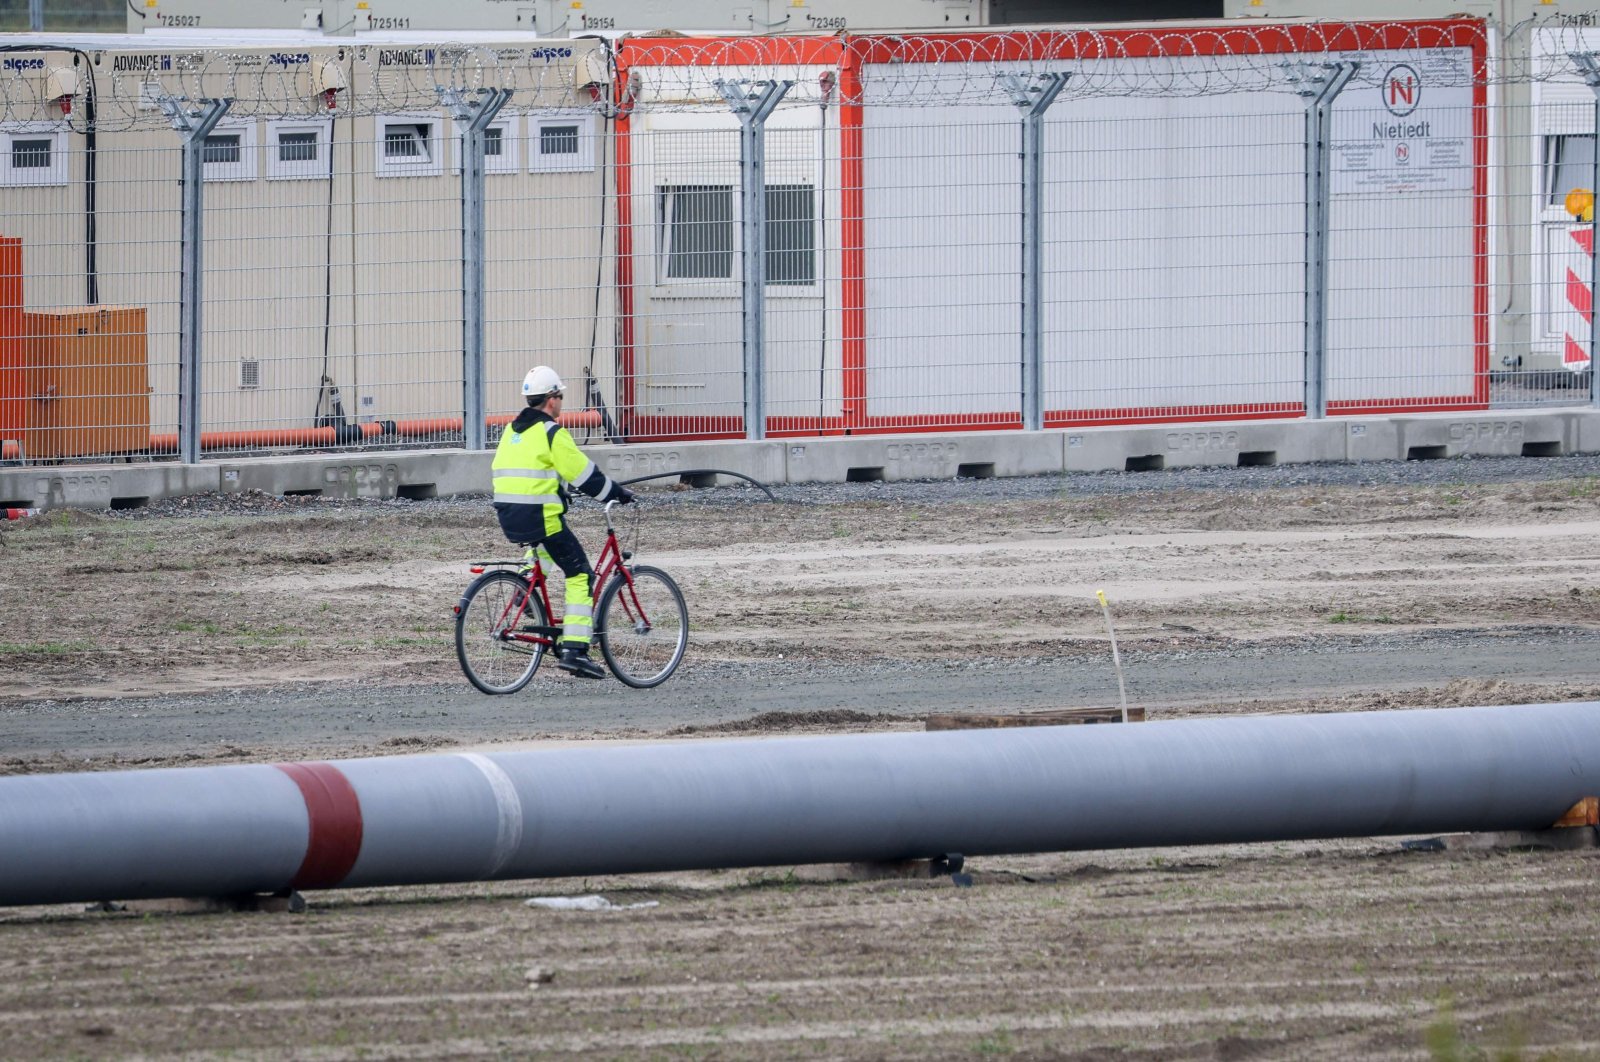 Jerman membangun terminal gas baru untuk menggantikan jaringan pipa Rusia